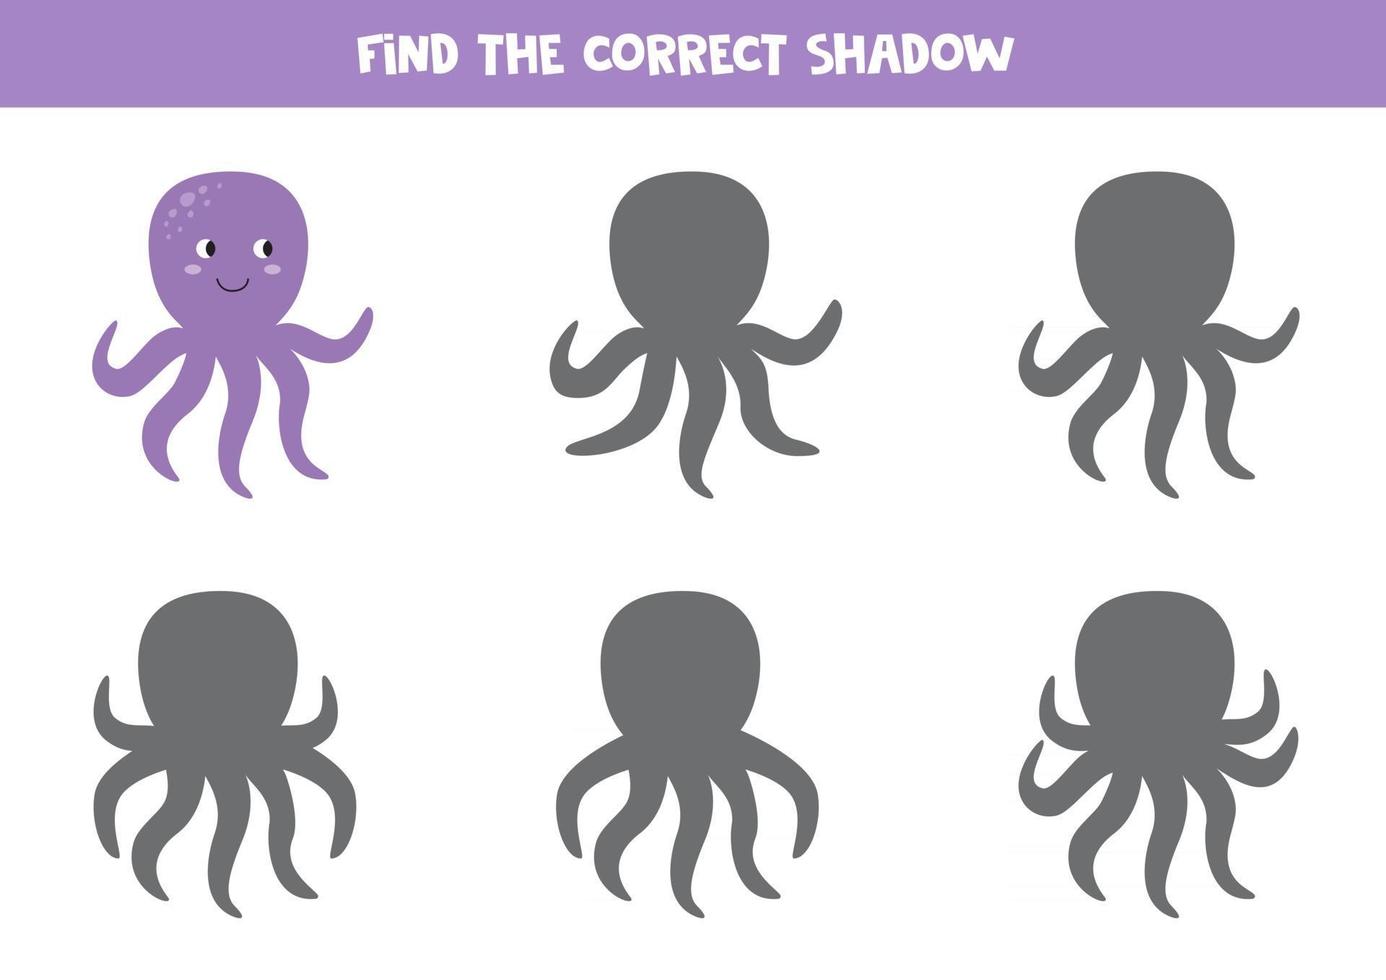 encuentra la sombra correcta del pulpo morado de dibujos animados lindo. juego de lógica para niños. vector